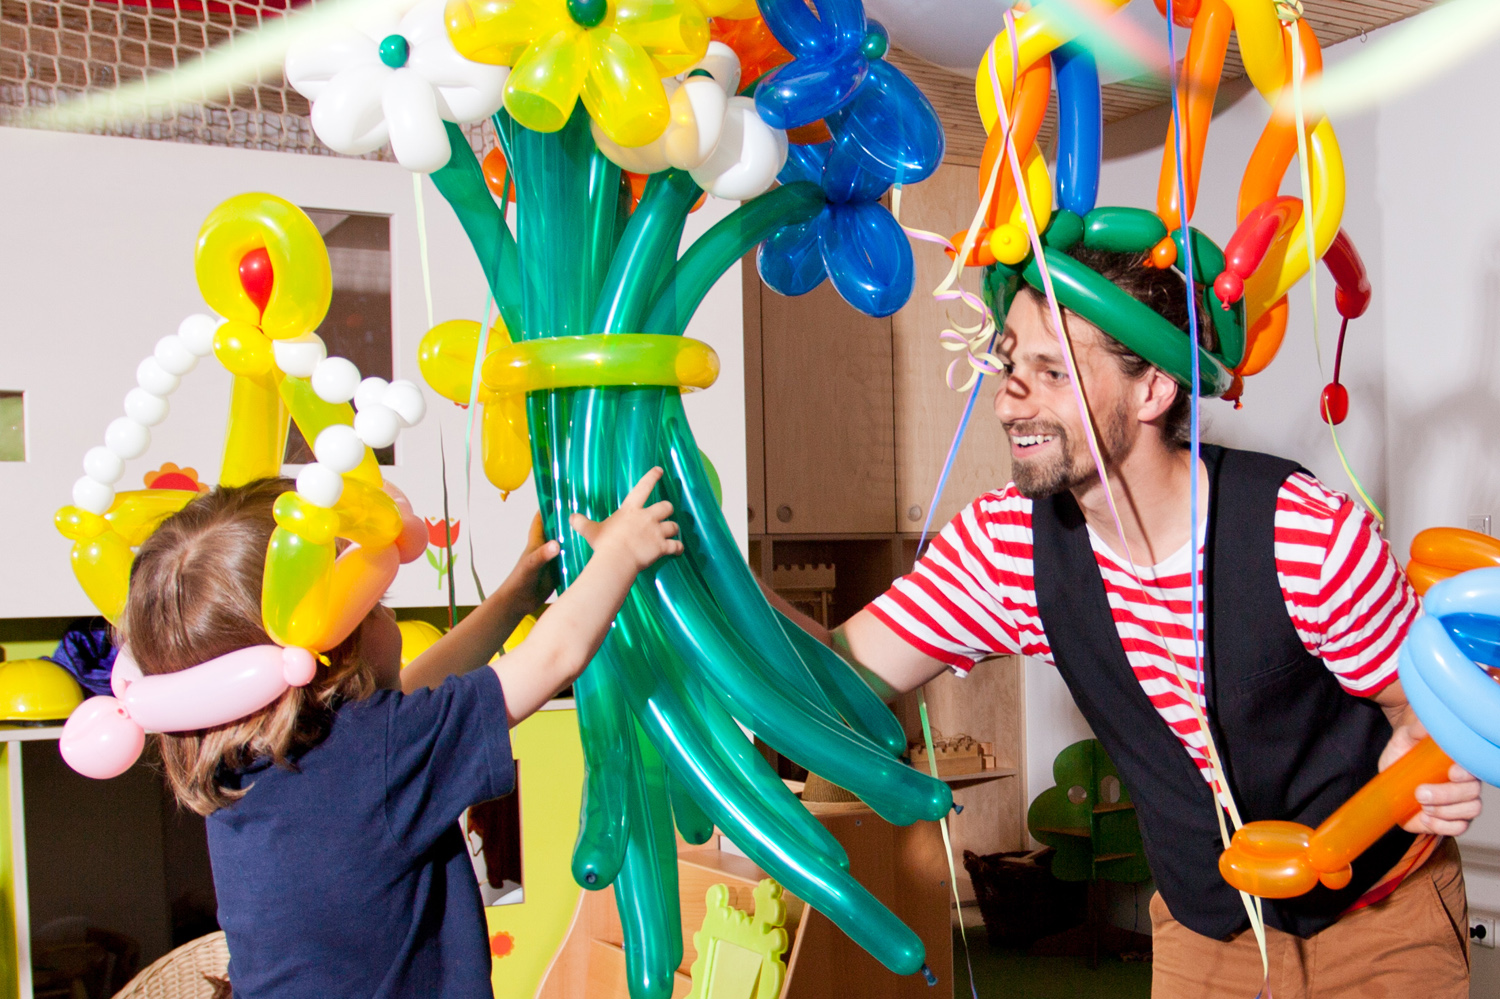 Mr. Rubelli der Ballonkünstler knotet Luftballons zu Blumensträußen